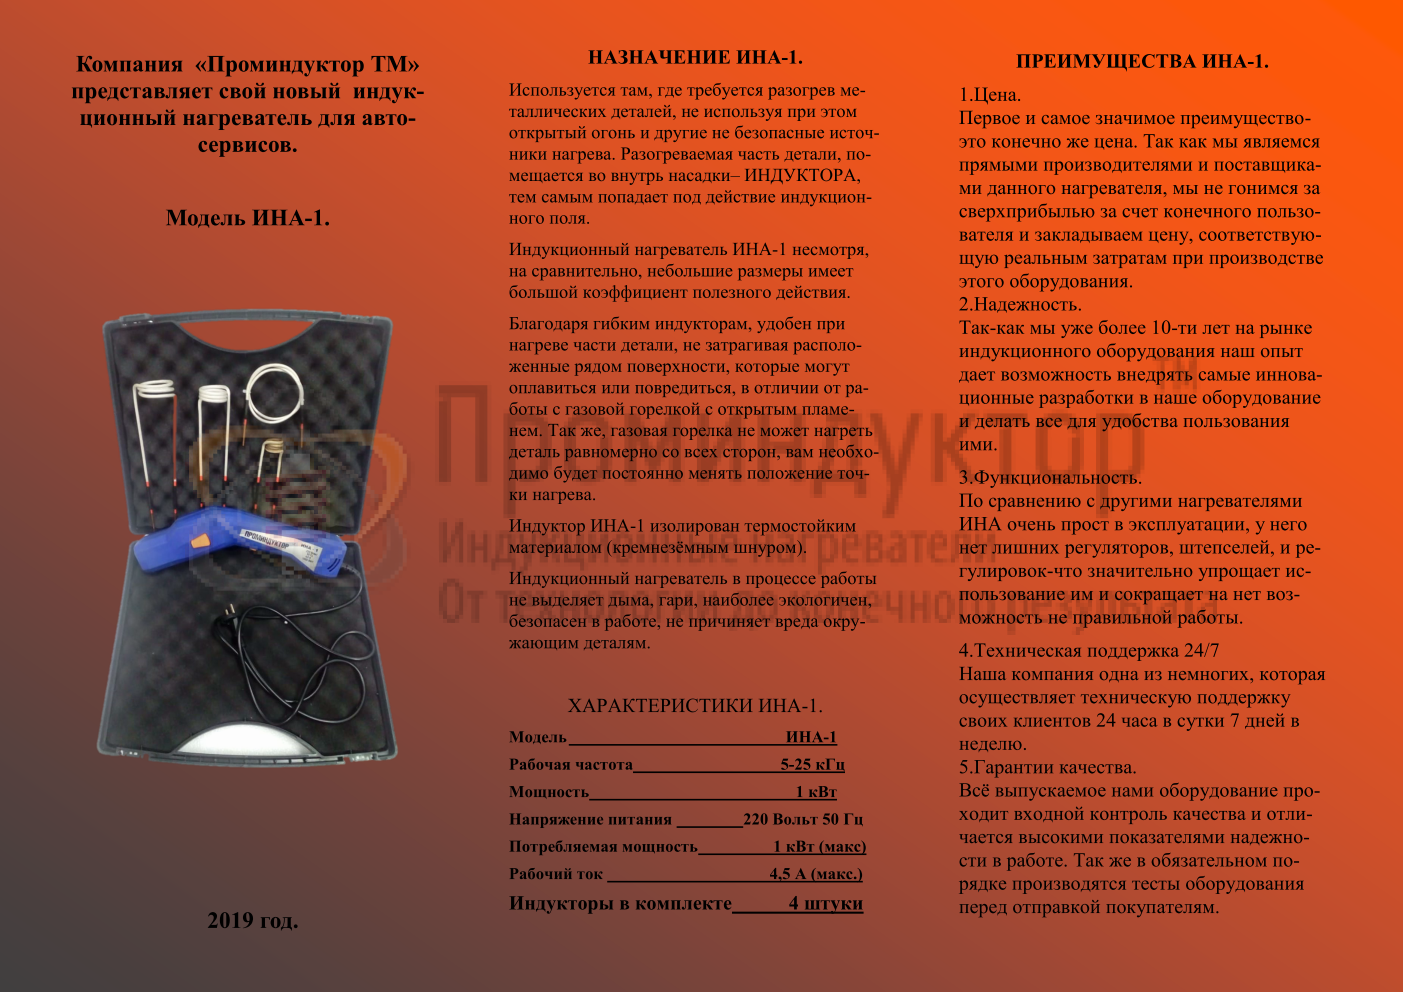 Специализированный индукционный нагреватель для автосервисов ИНА-1